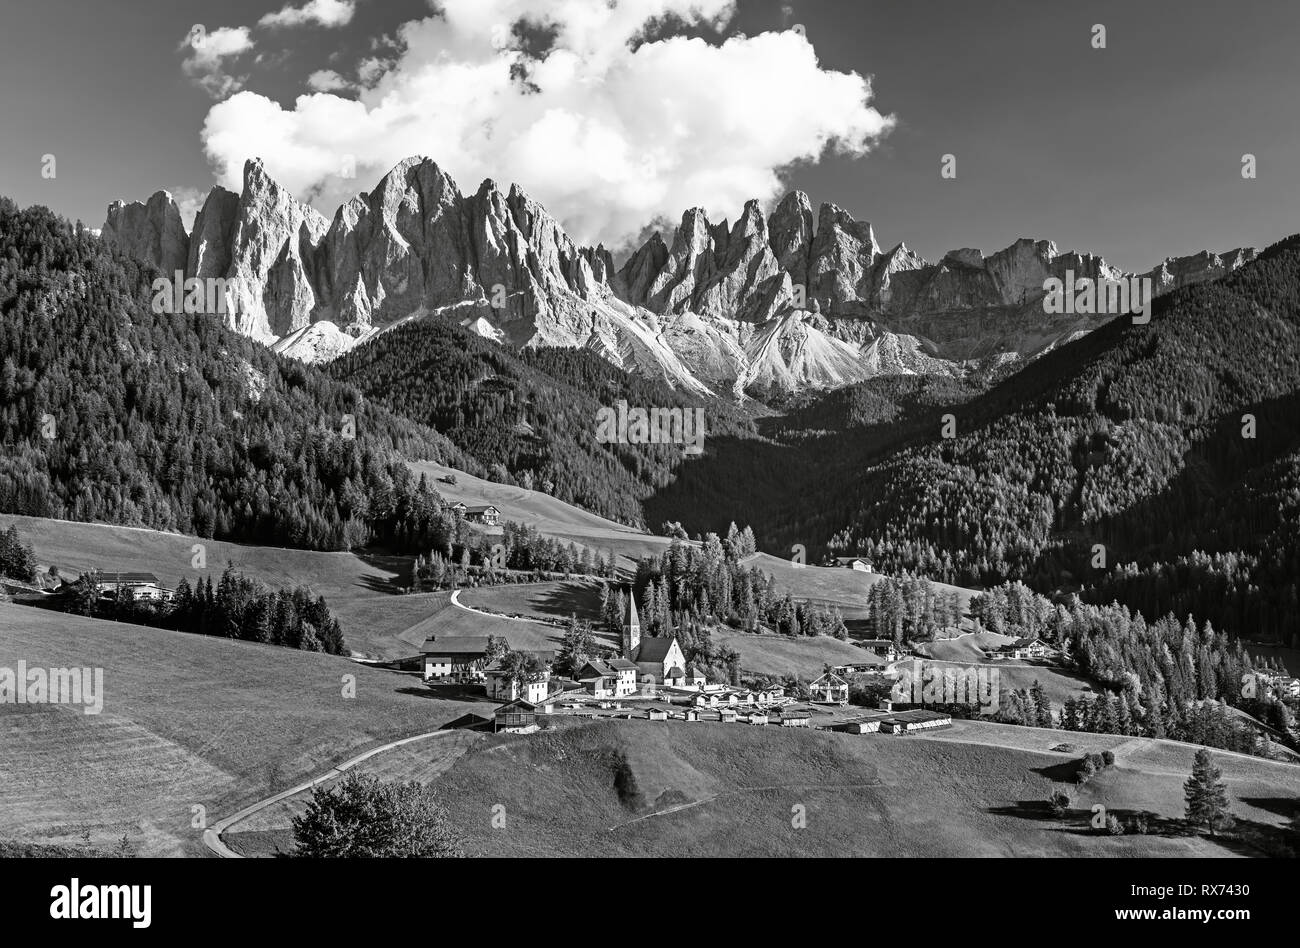 Célèbre village alpin place Santa Maddalena avec magical Dolomites montagnes en arrière-plan, Val di Funes, vallée de la région Trentin-Haut-Adige, Italie Banque D'Images